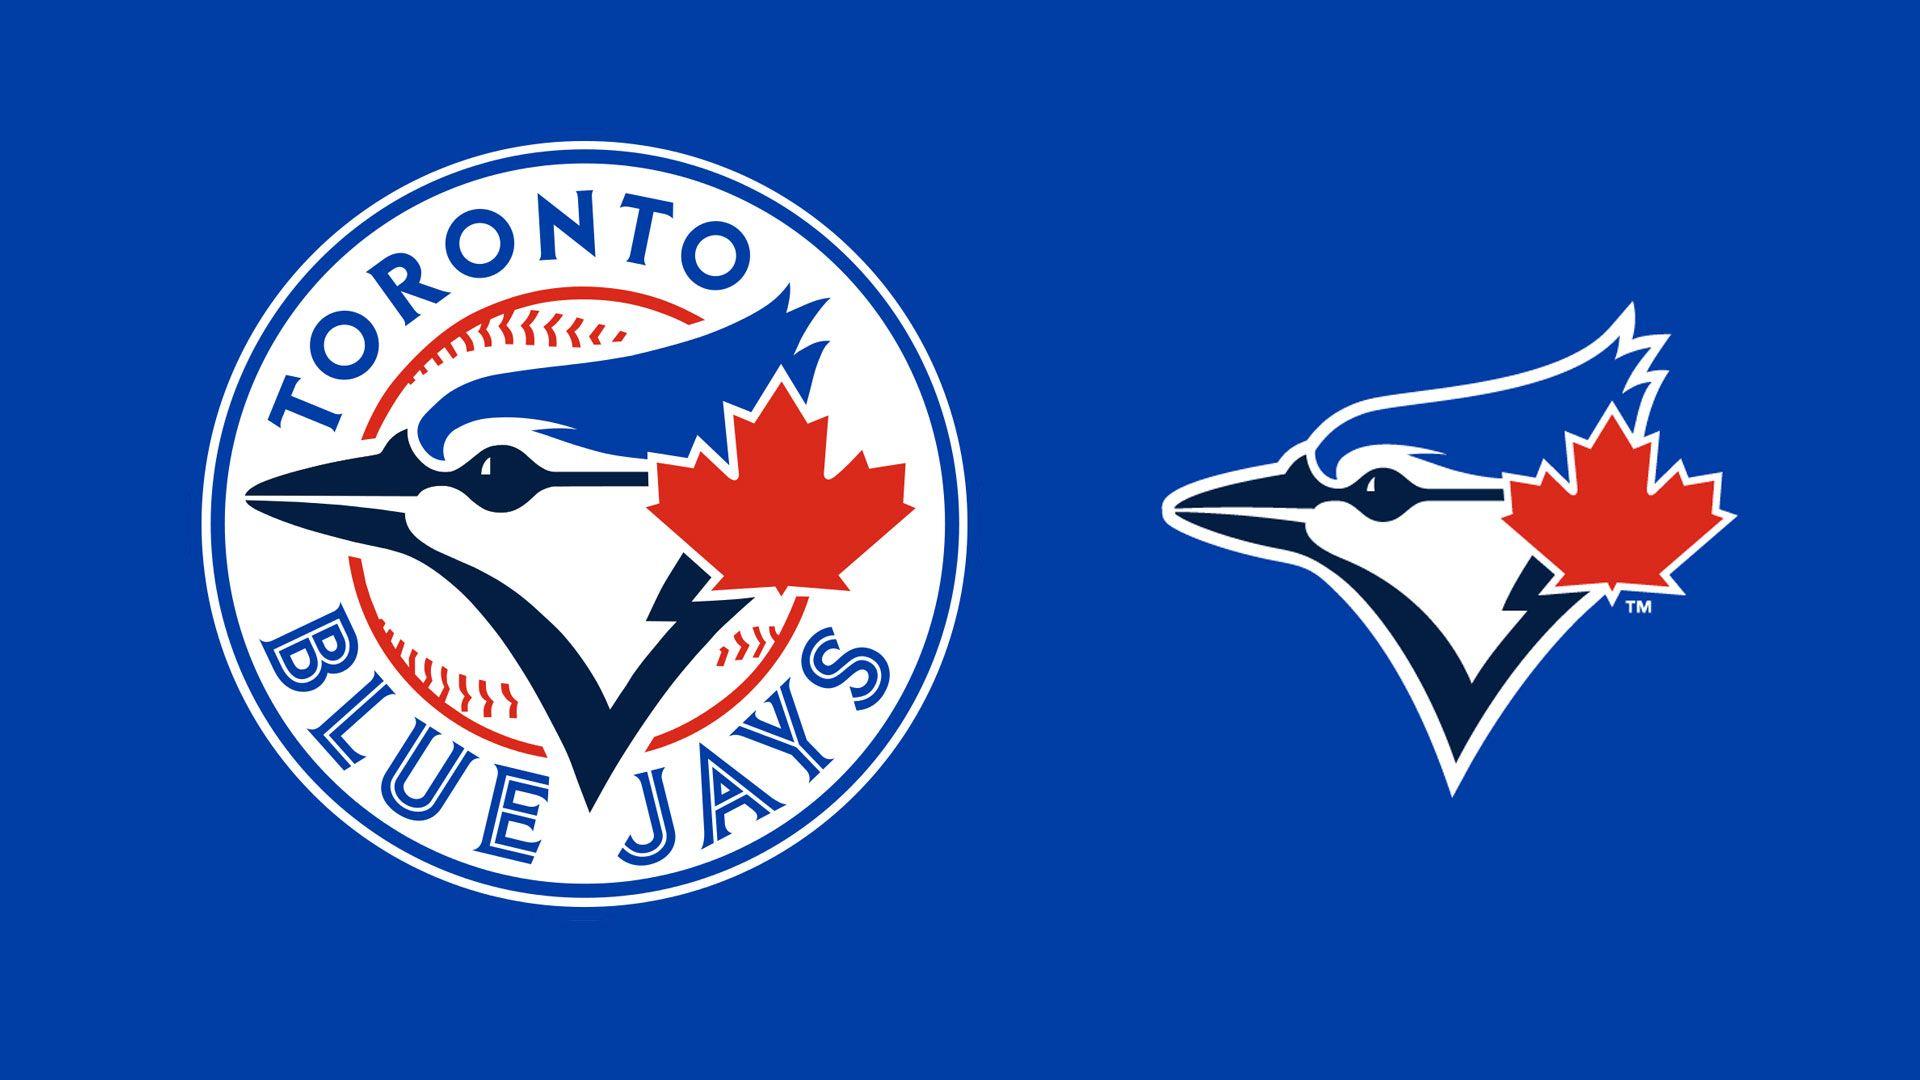 Toronto Blue Jays Team Logo - MLB Toronto Blue Jays Team Logo wallpaper 2018 in Baseball